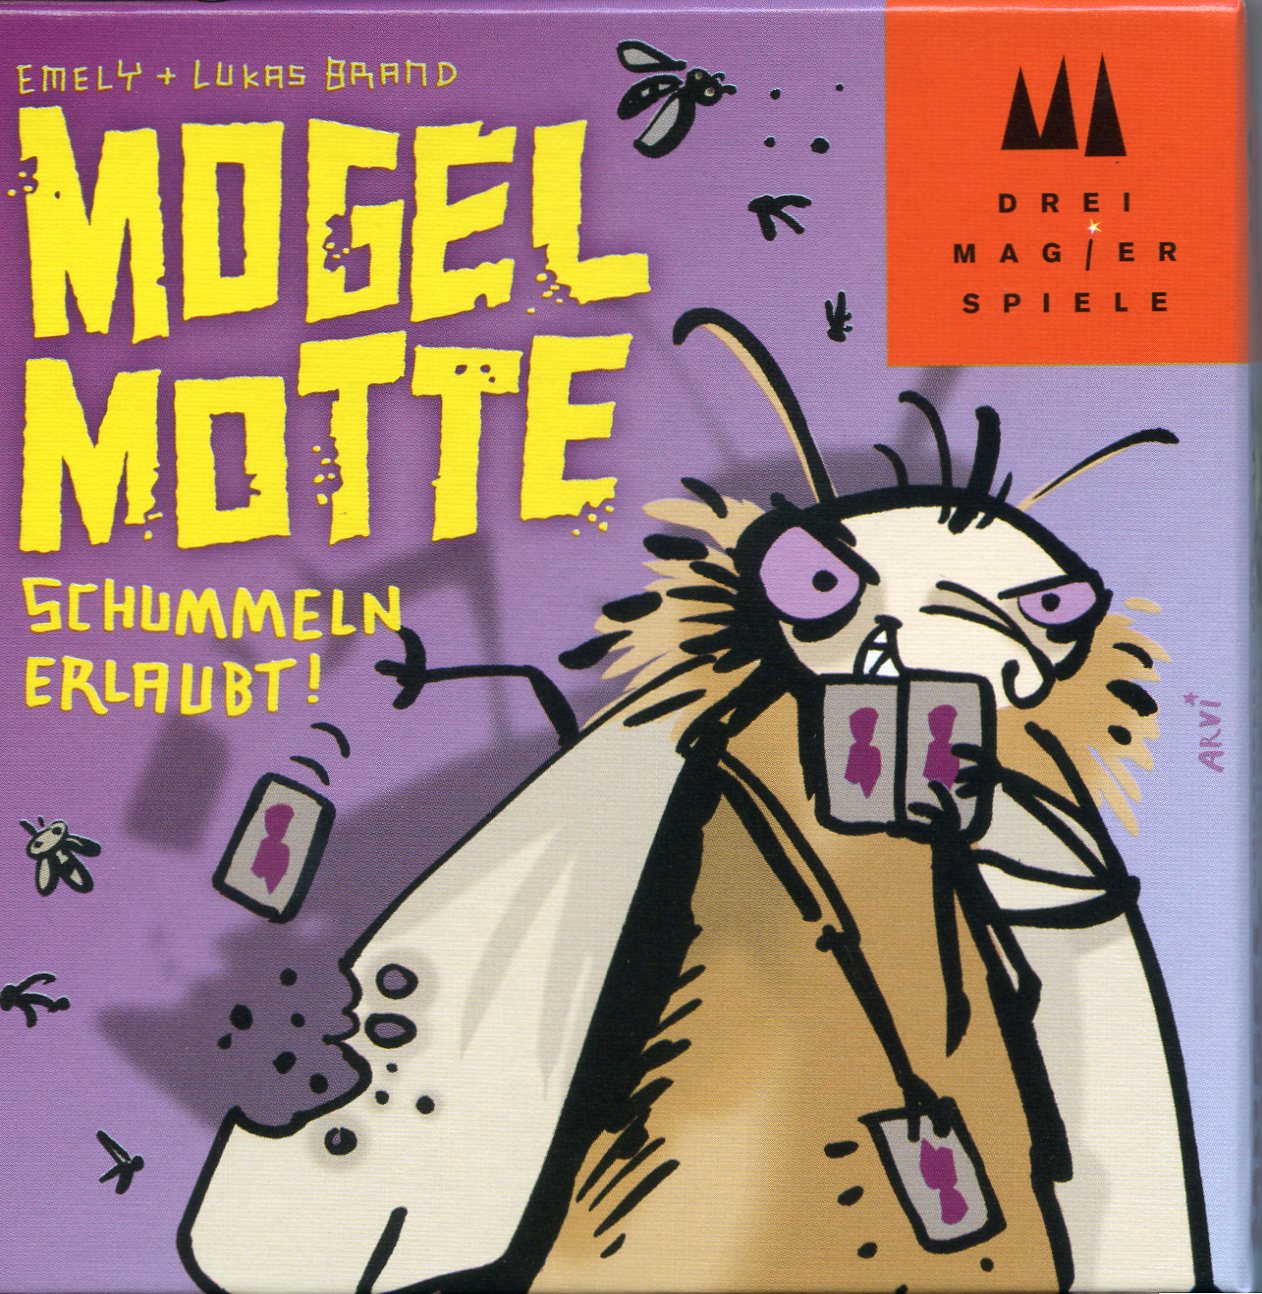 Mogel Motte: Schummeln erlaubt (Valse Motten)